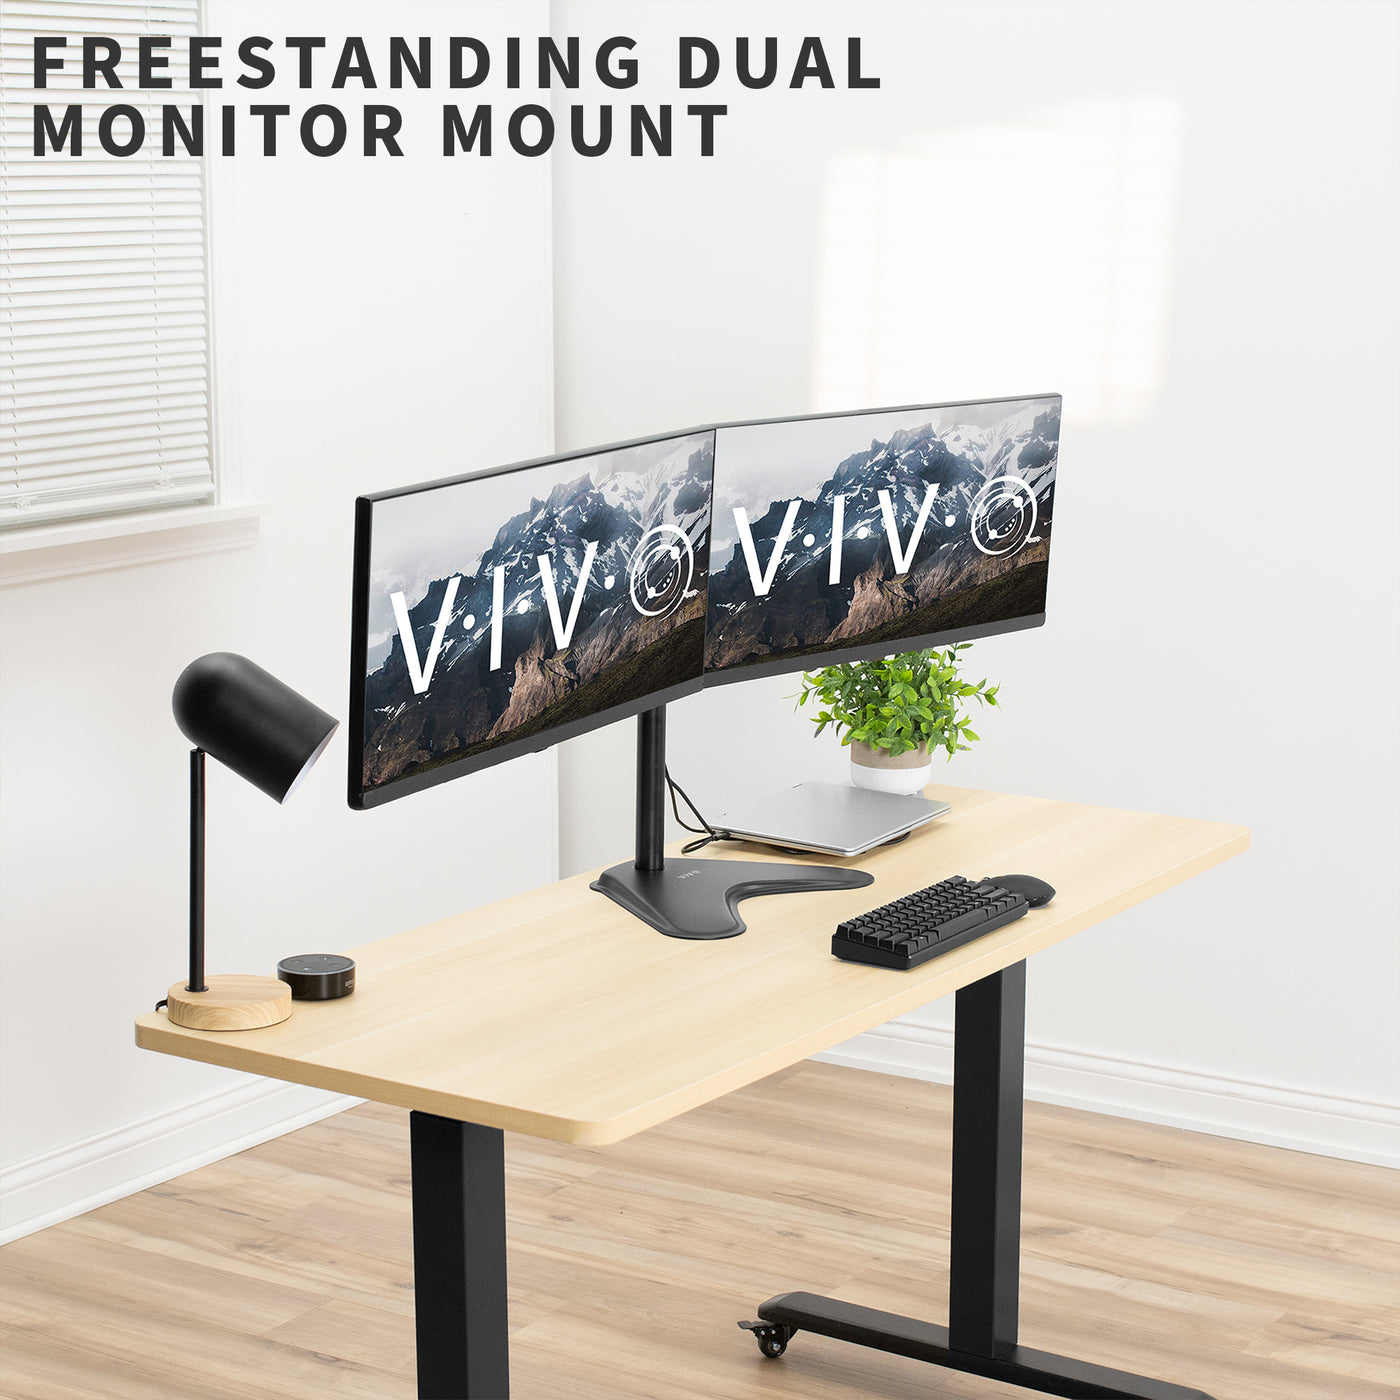 Freestanding adjustable dual monitor ergonomic desk mount for office workstation.